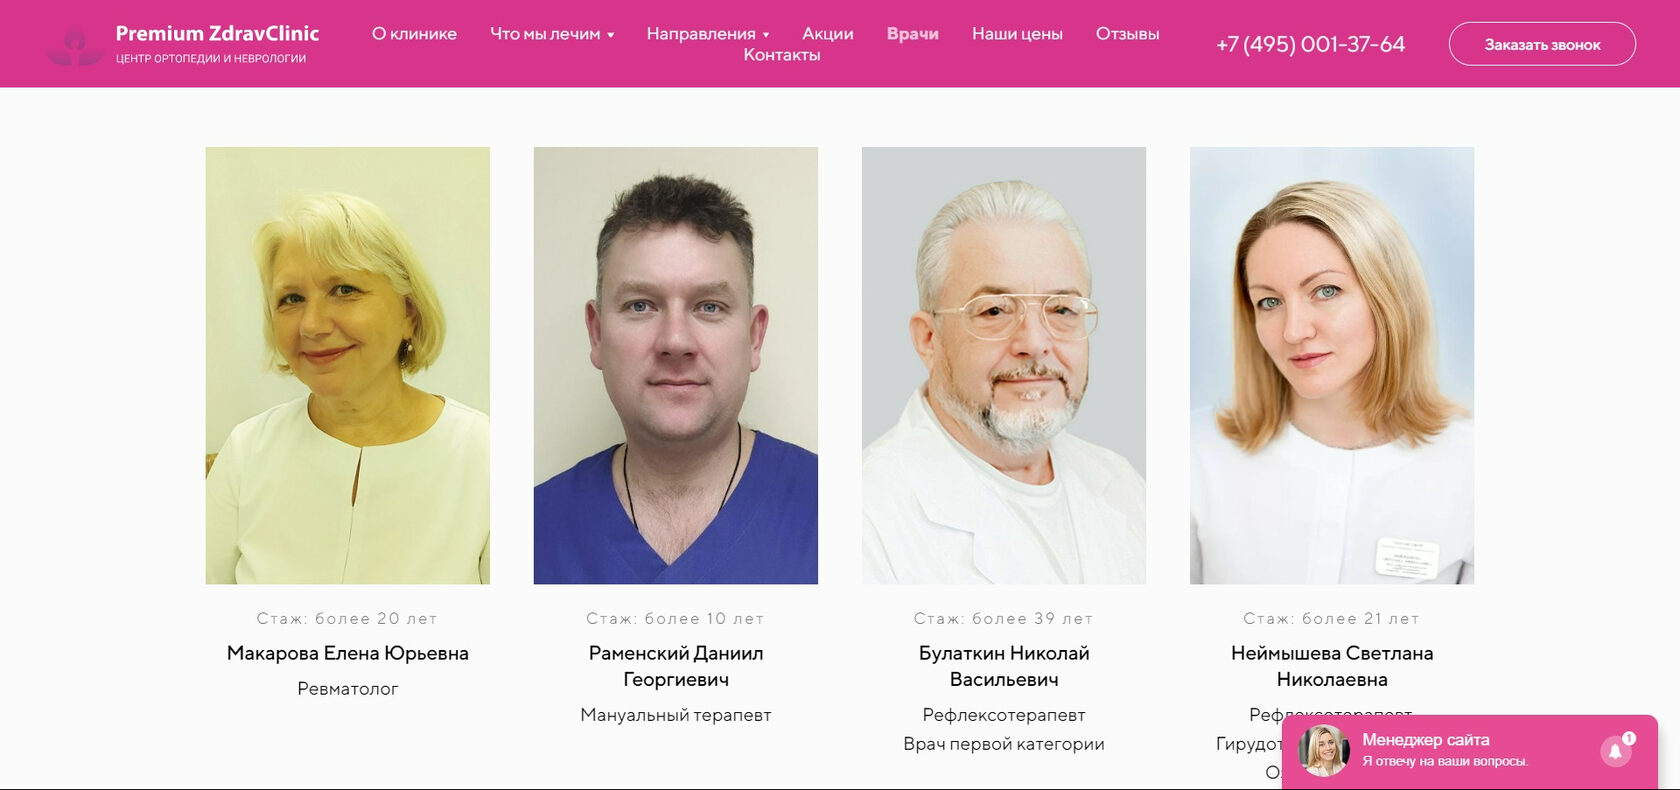 Работа неврологом в москве